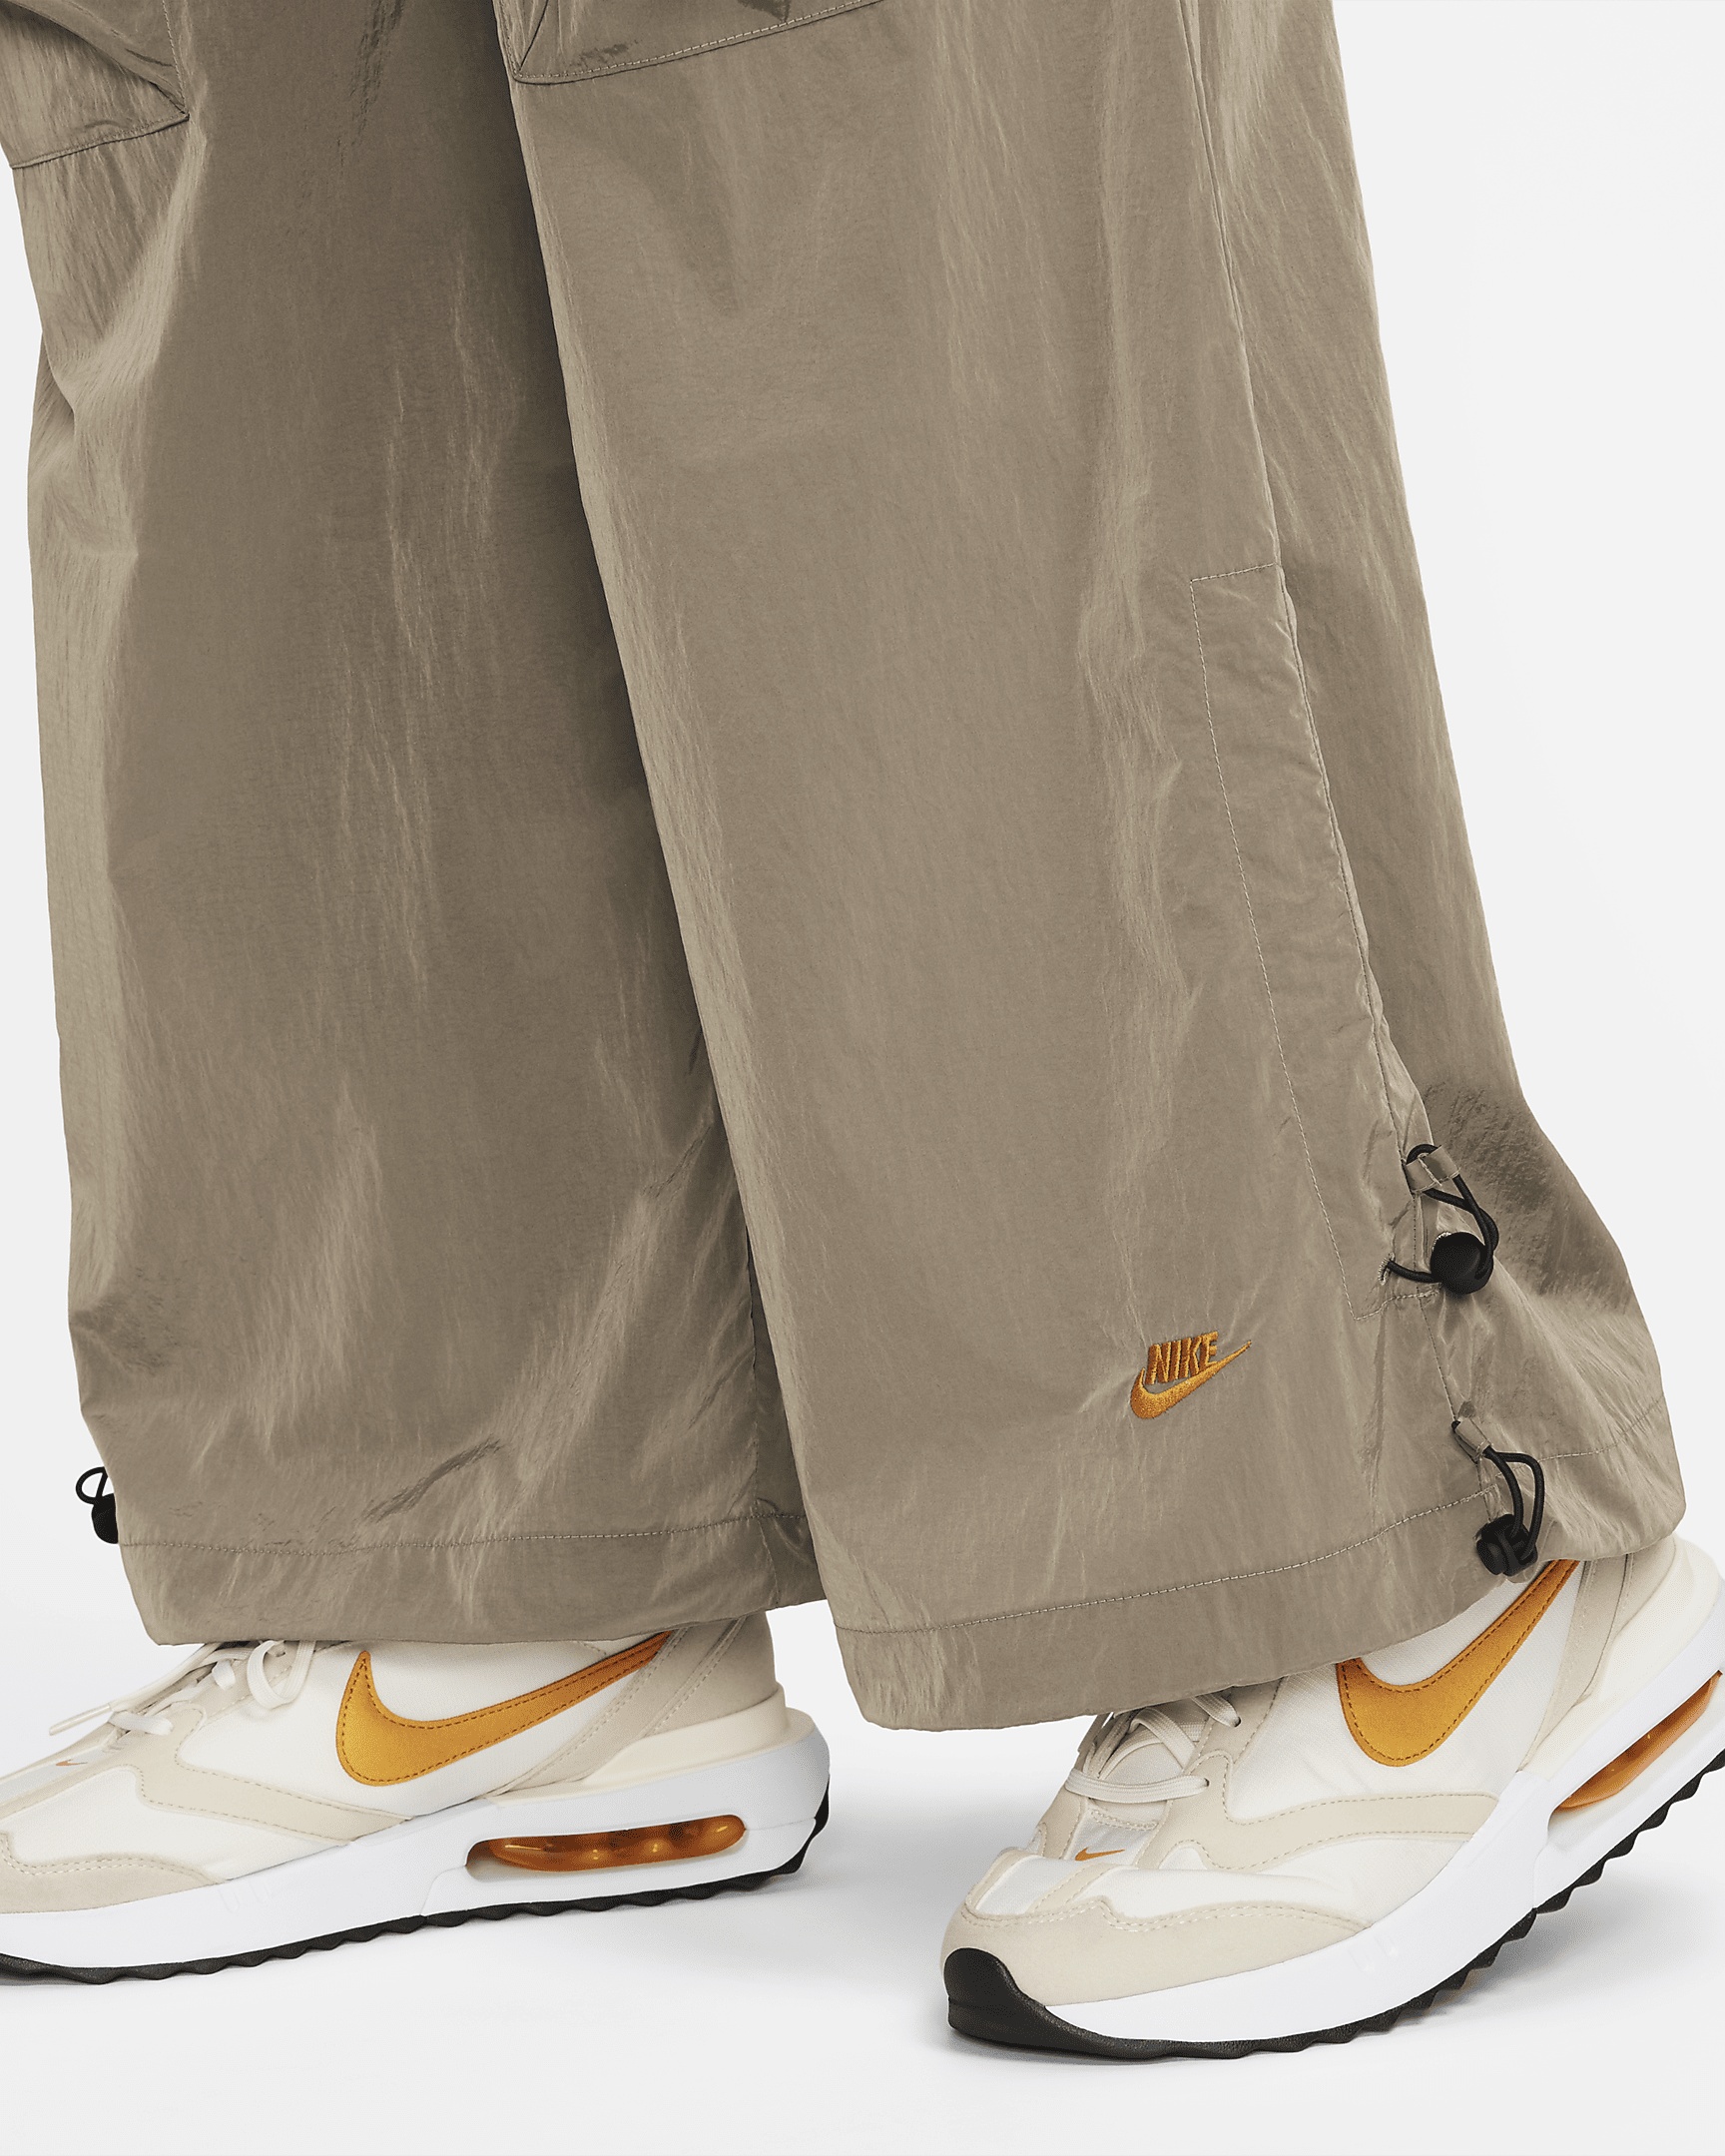 Women's Nike Sportswear Tech Pack Repel Pants - 5